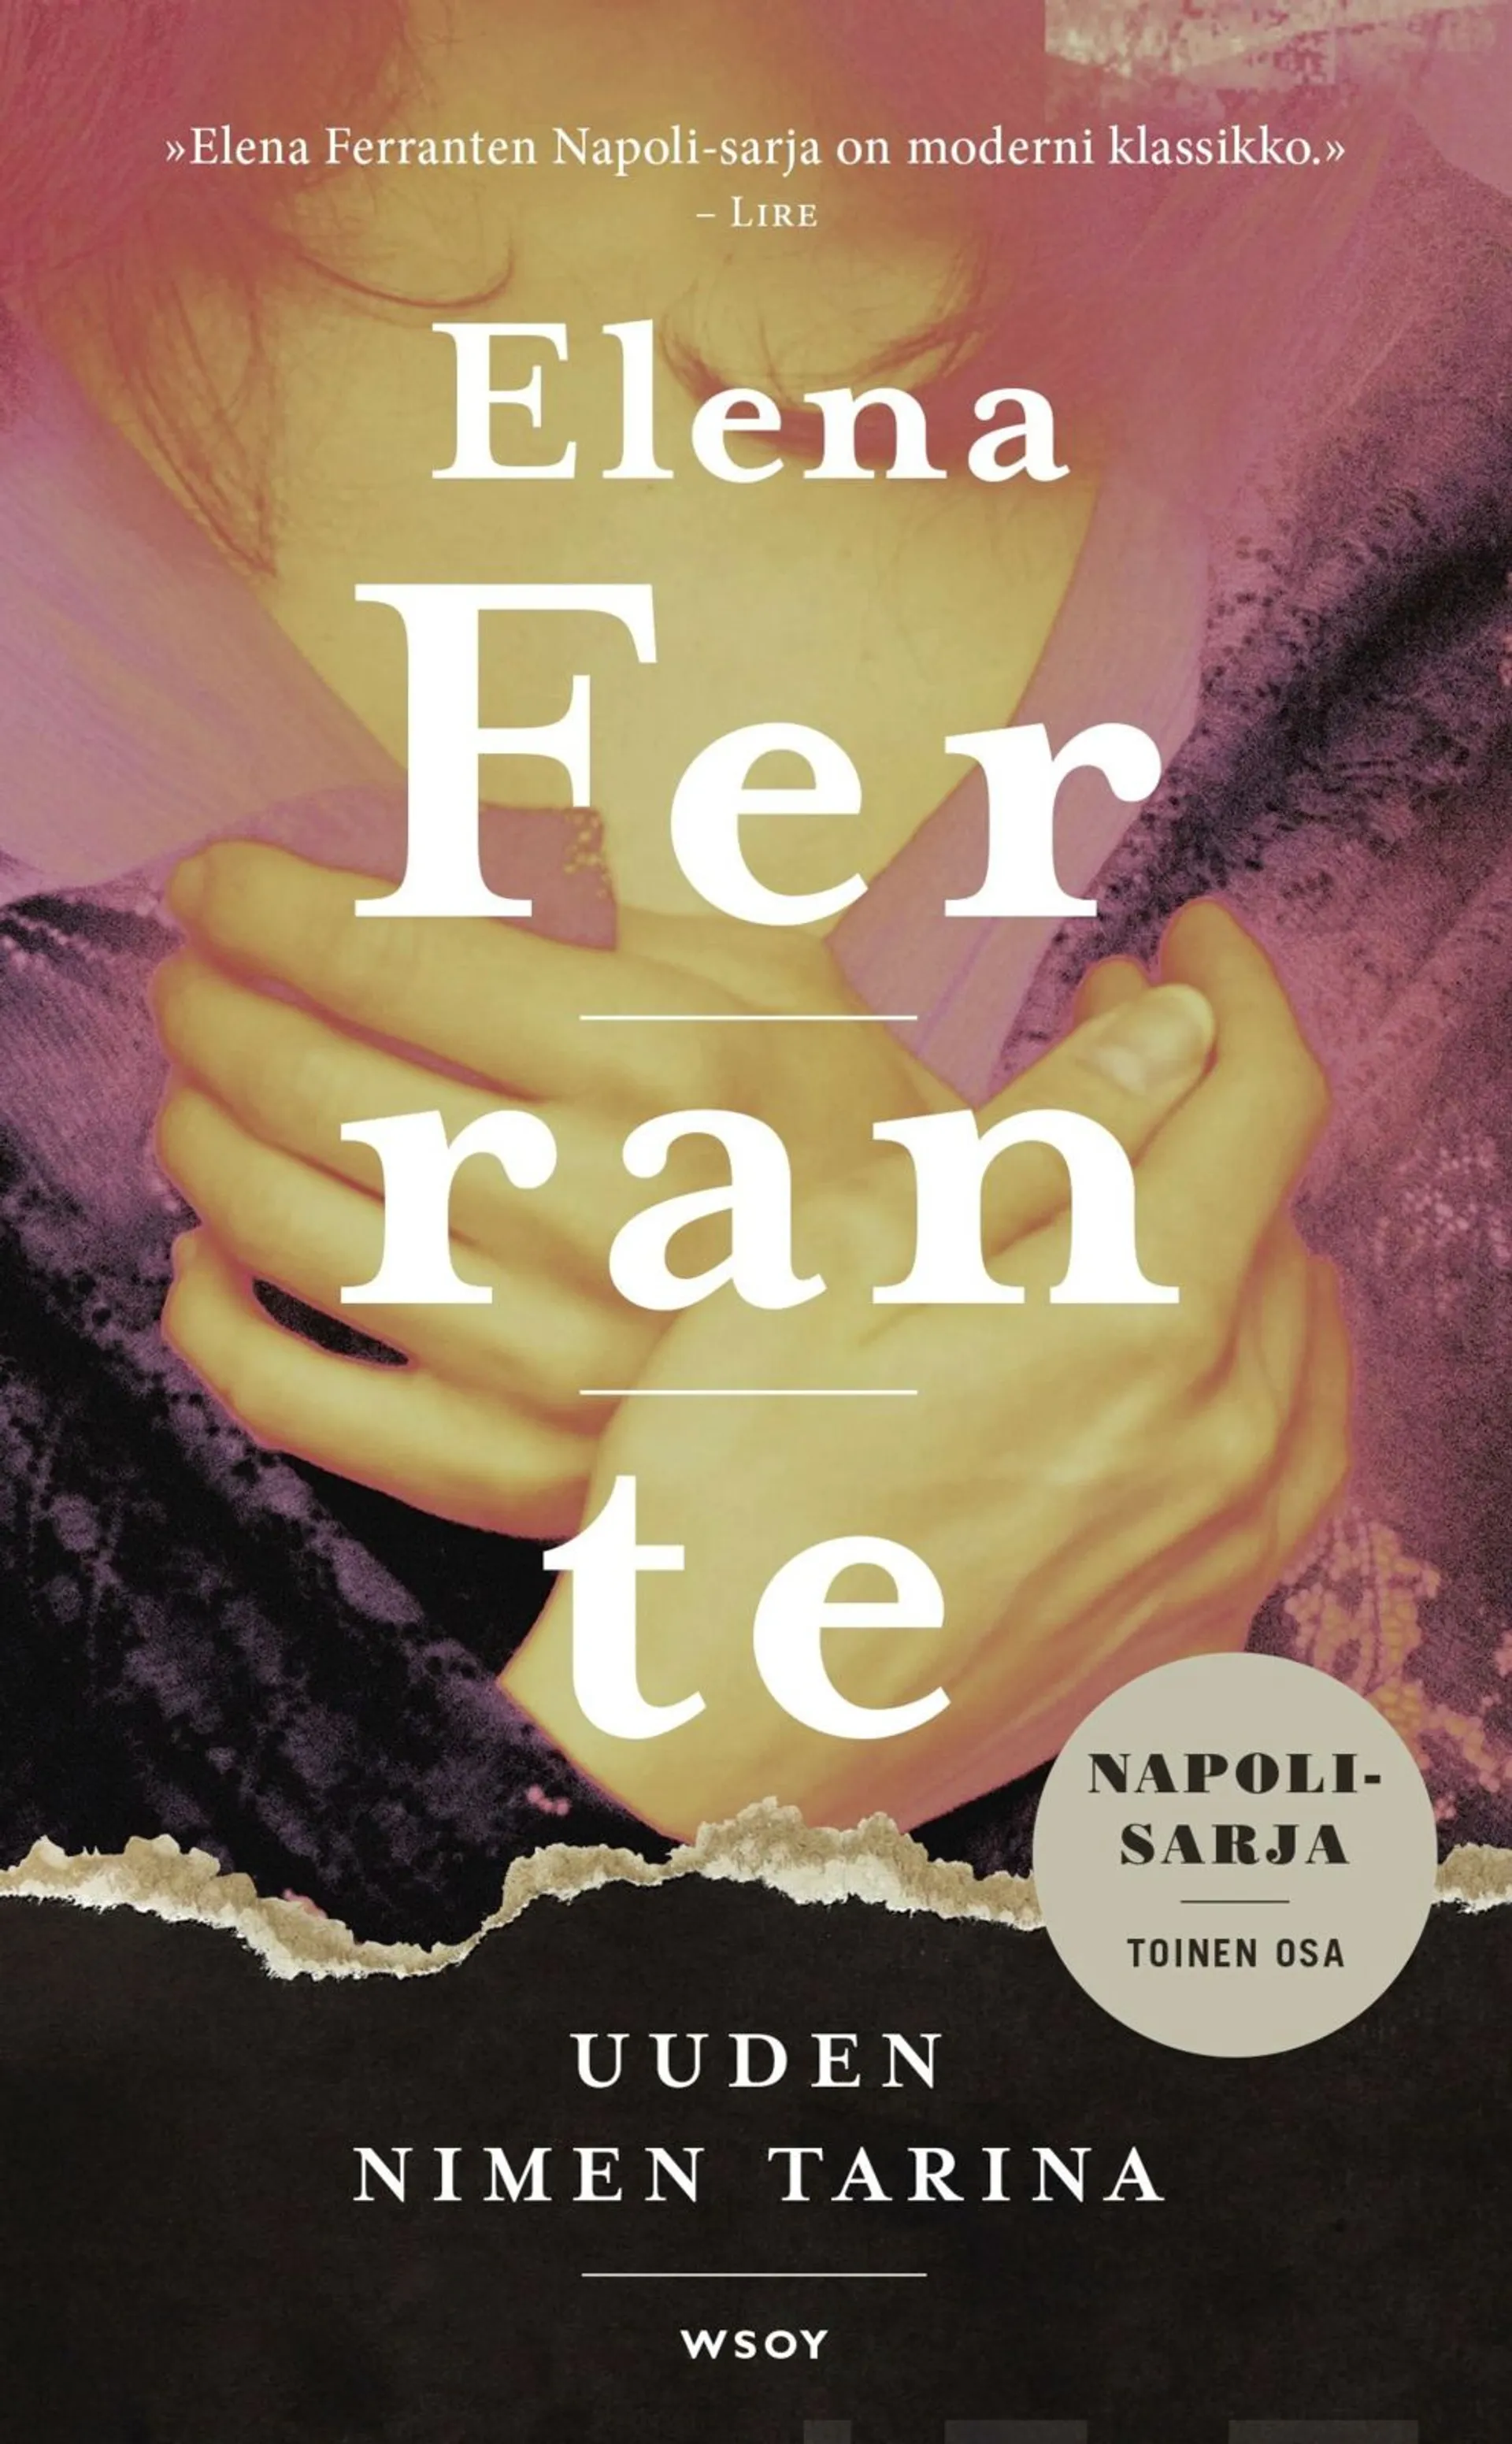 Ferrante, Uuden nimen tarina - Nuoruus